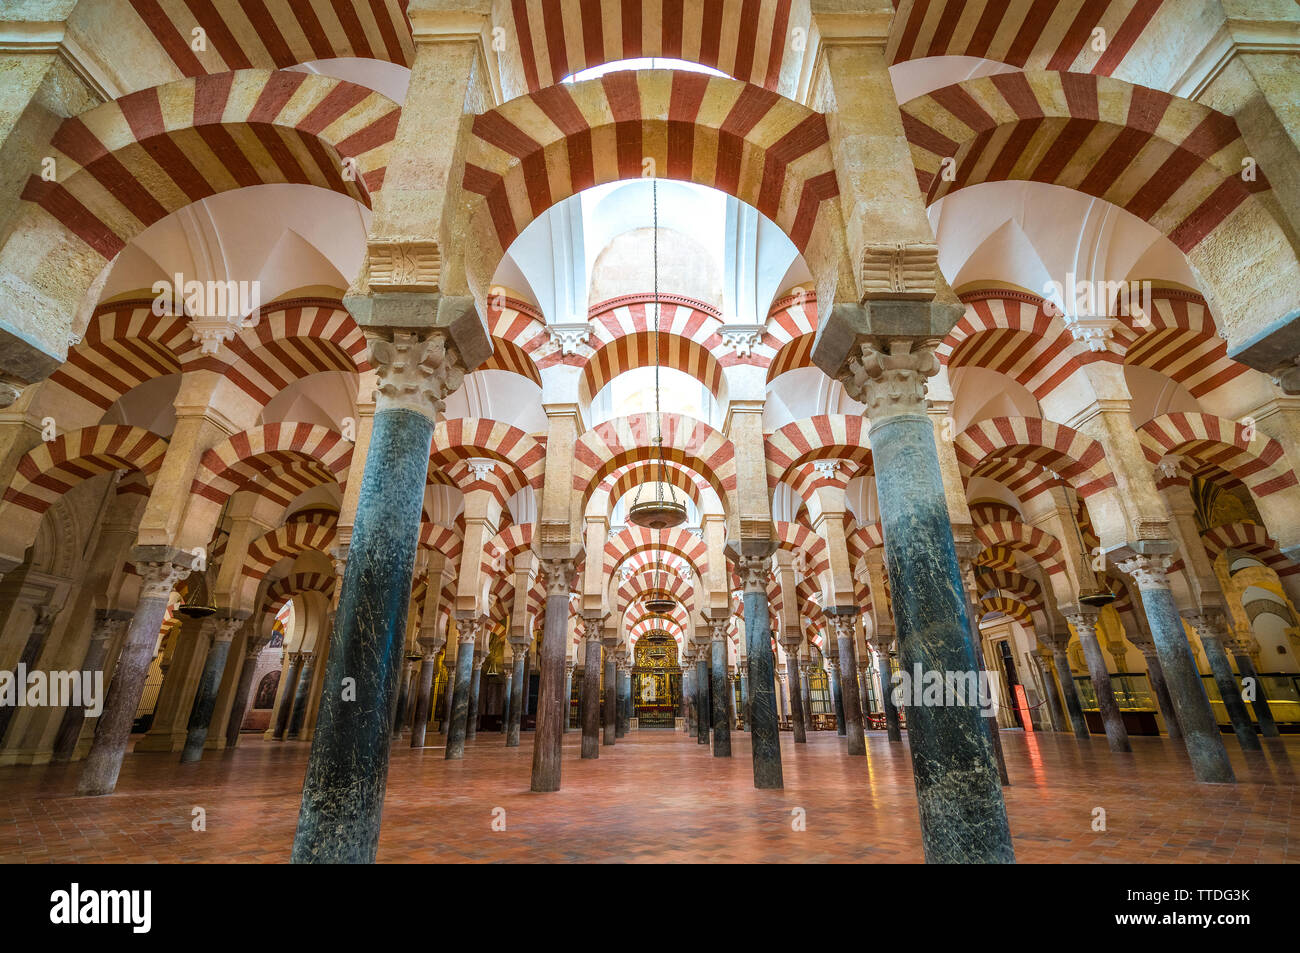 Malerische indoor Blick in die Moschee - die Kathedrale von Cordoba. Andalusien, Spanien. Stockfoto